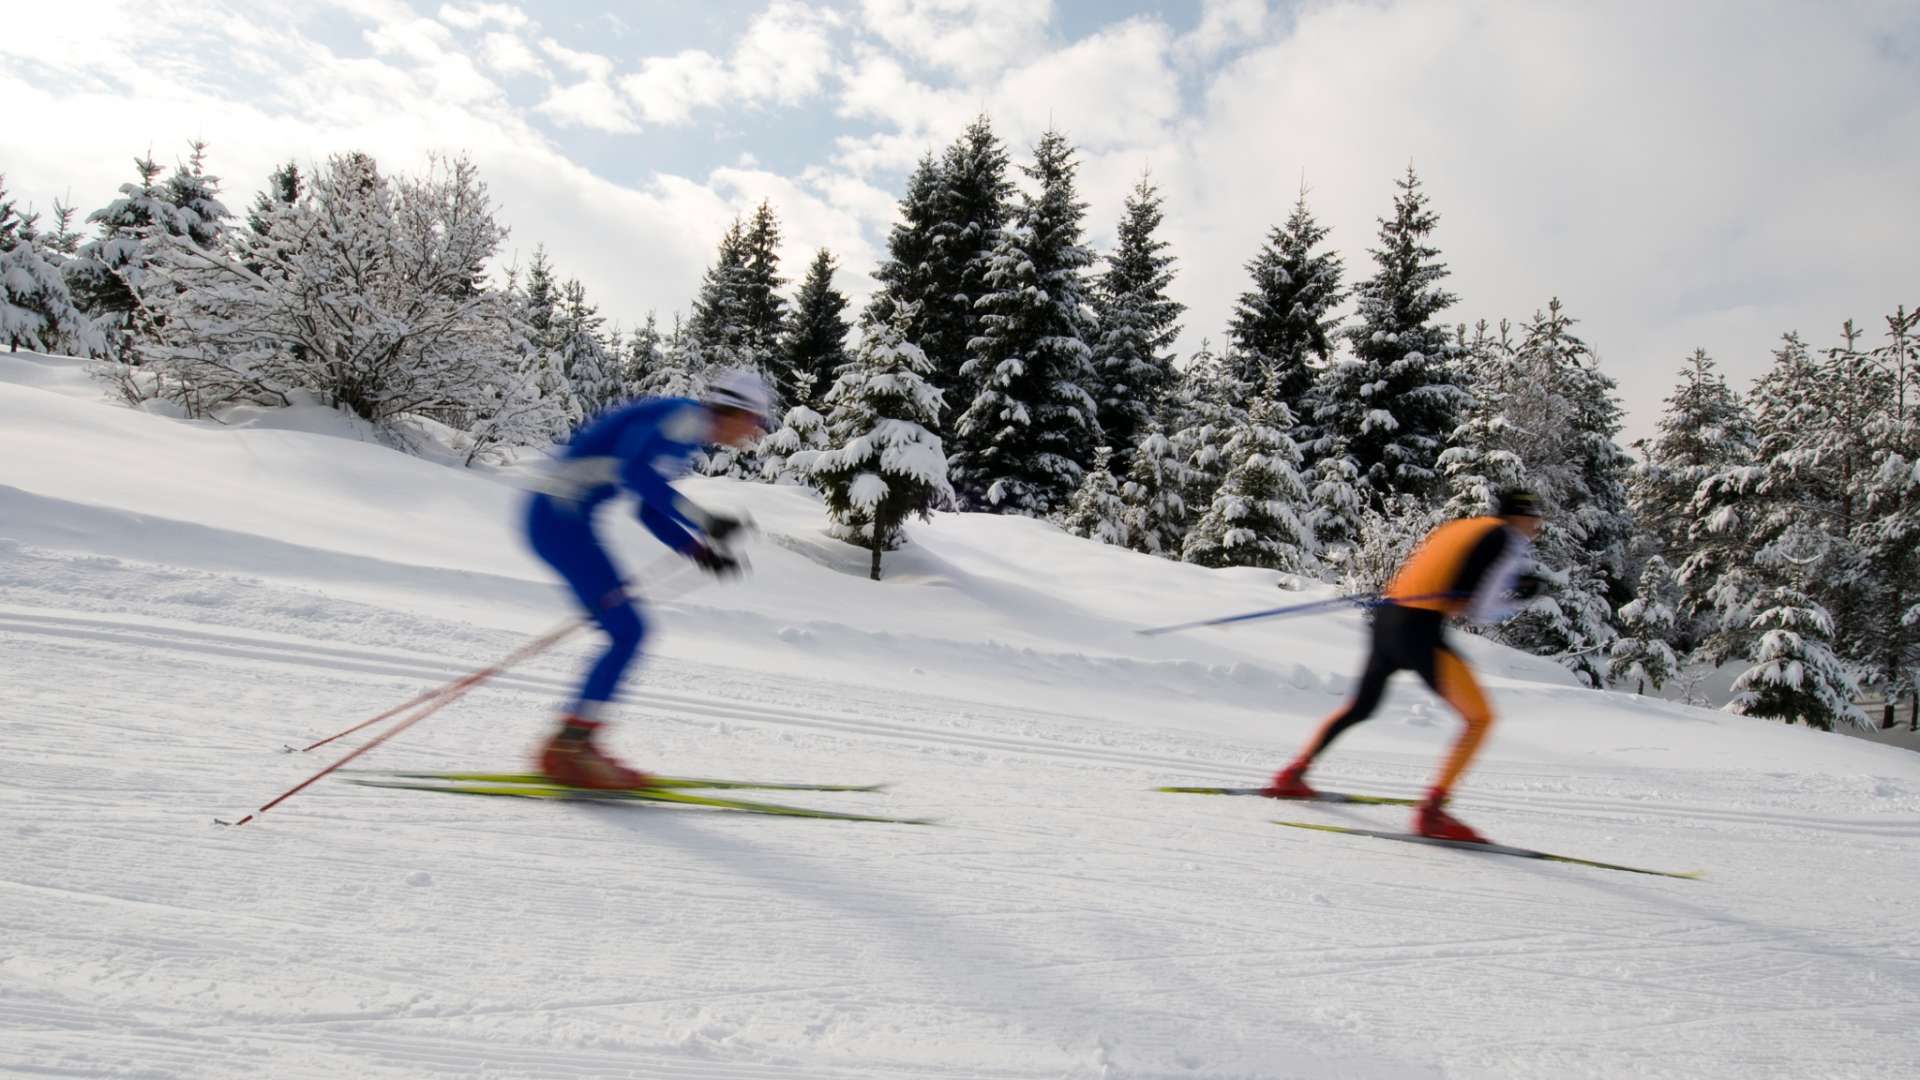 Langlauf: Weltcup Lillehammer 02.12.2022 um 12:40 Uhr auf 